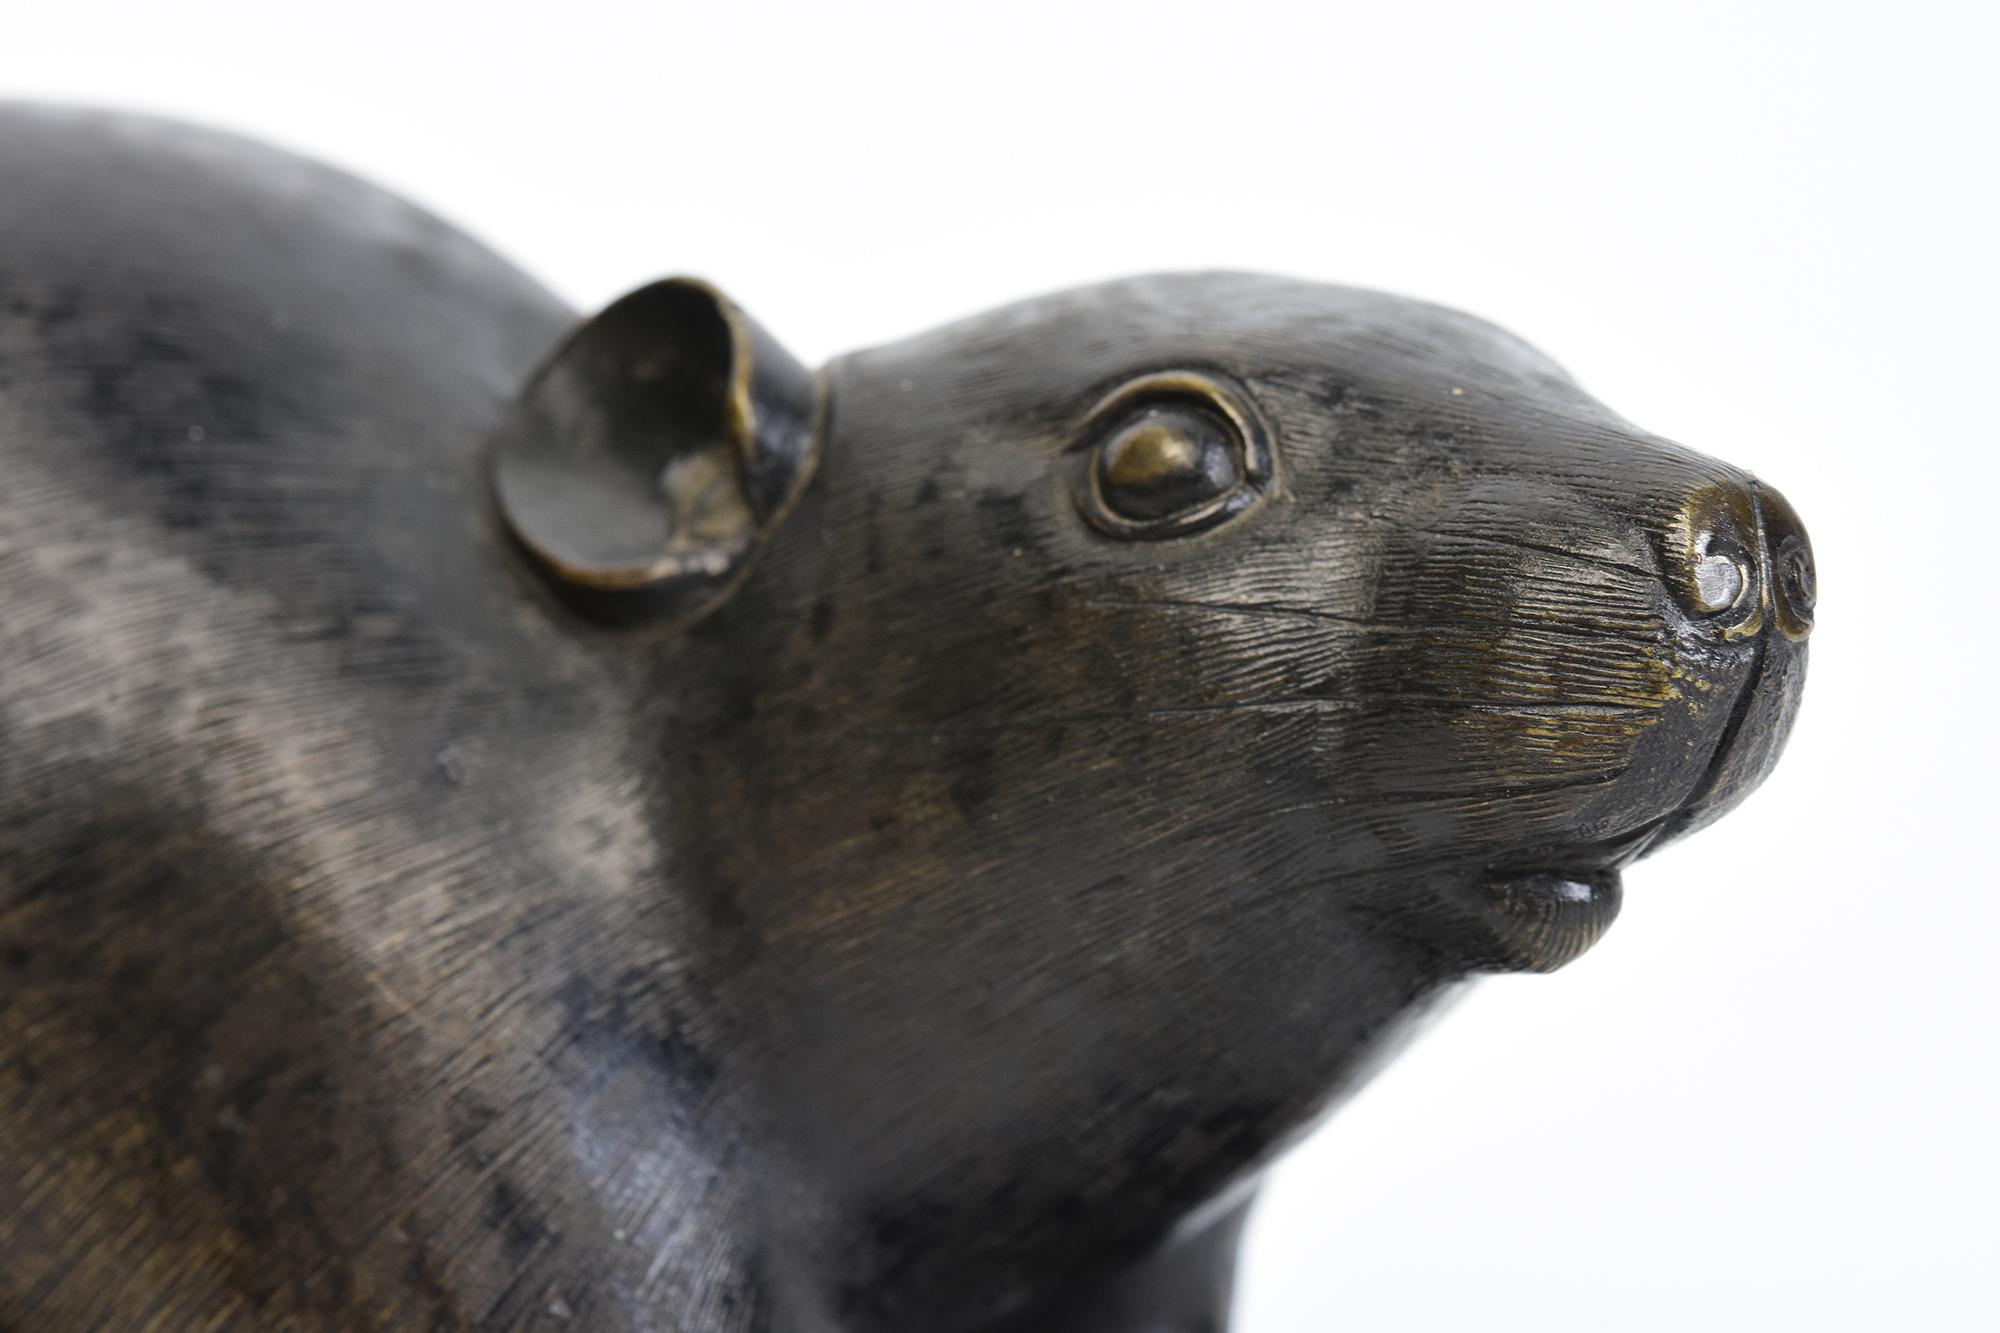 Animal en bronze japonais rat / souris tenant une châtaigne avec signe d'artiste.
La signature de l'Artistics se trouve sur la dernière photo.

Age : Japon, Période Meiji, 19ème siècle
Taille : Longueur 18 C.C. / Largeur 8.5 C.C. / Hauteur 9